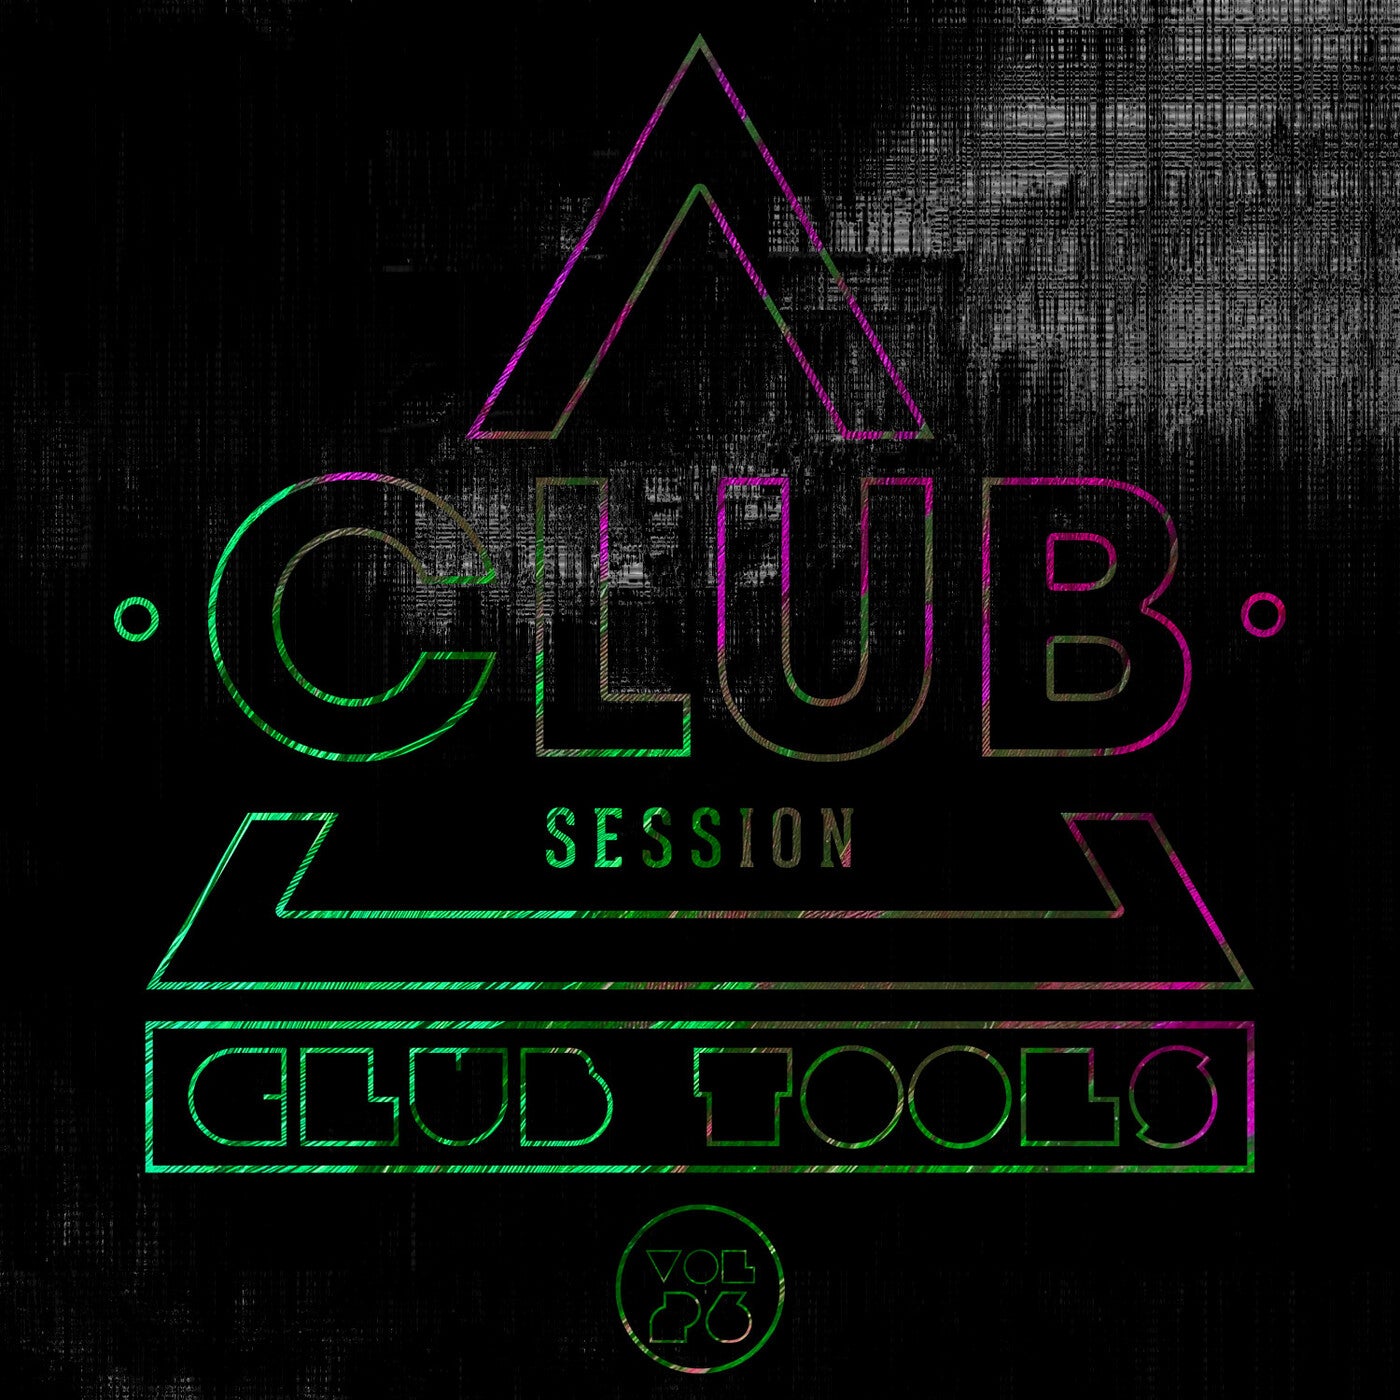 Club Session pres. Club Tools Vol. 26